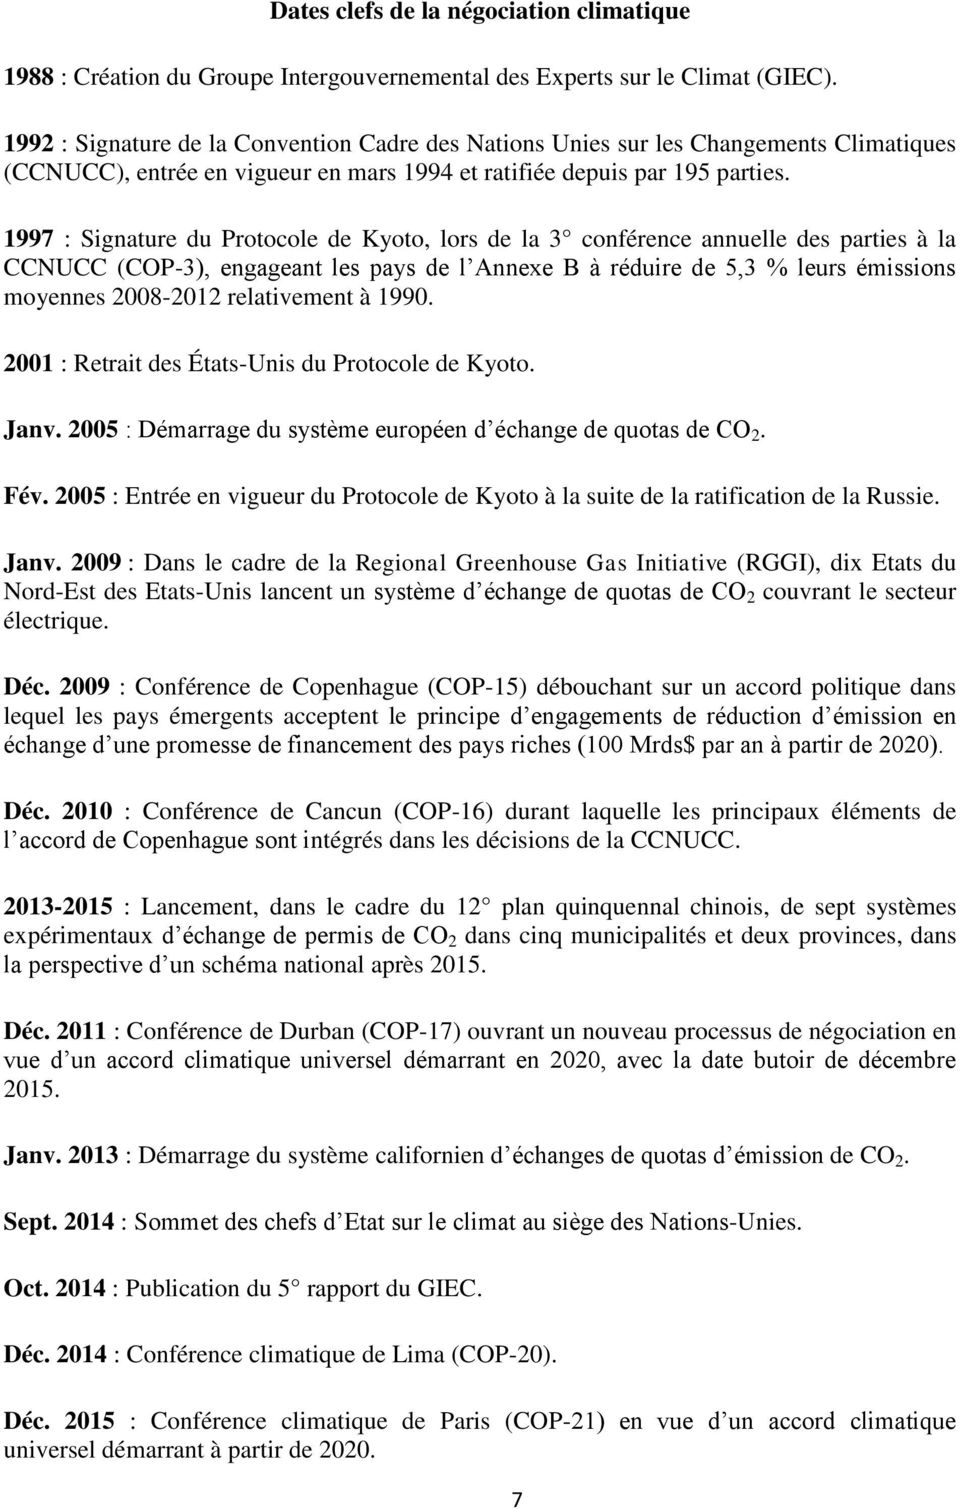 1997 : Signature du Protocole de Kyoto, lors de la 3 conférence annuelle des parties à la CCNUCC (COP-3), engageant les pays de l Annexe B à réduire de 5,3 % leurs émissions moyennes 2008-2012